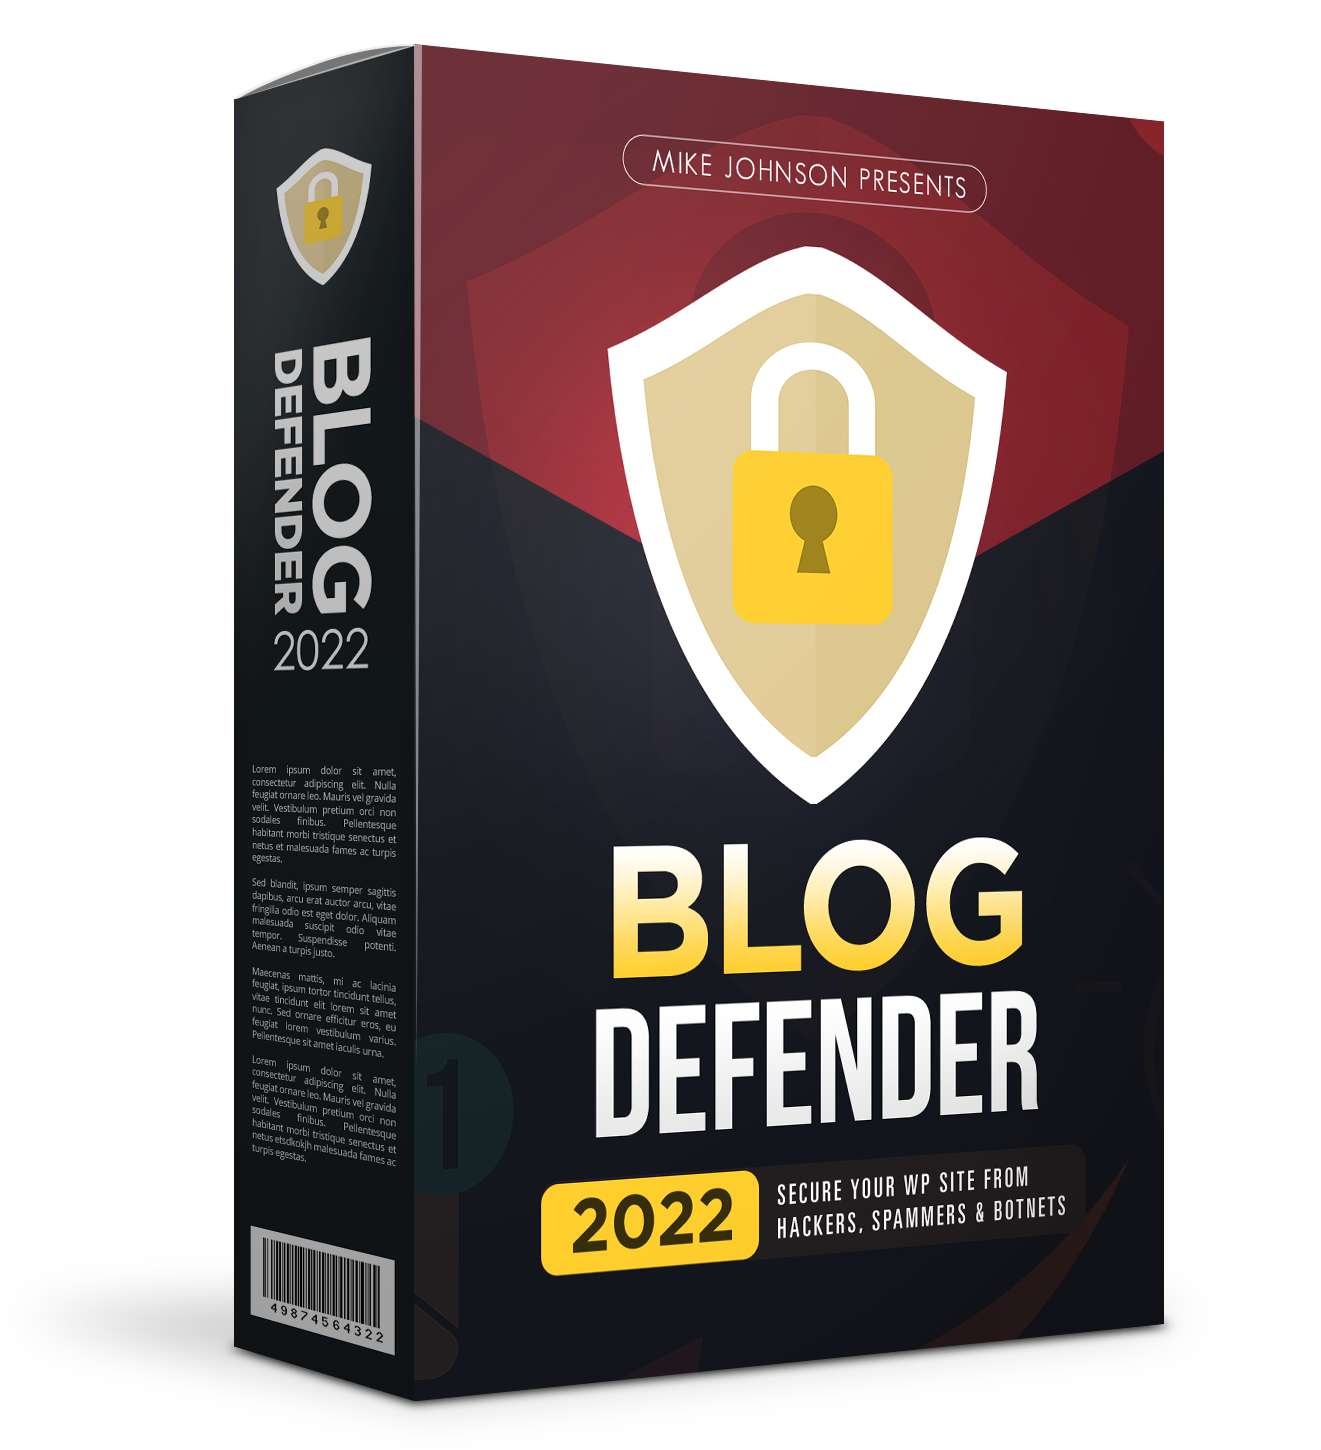 BlogDefender 2022